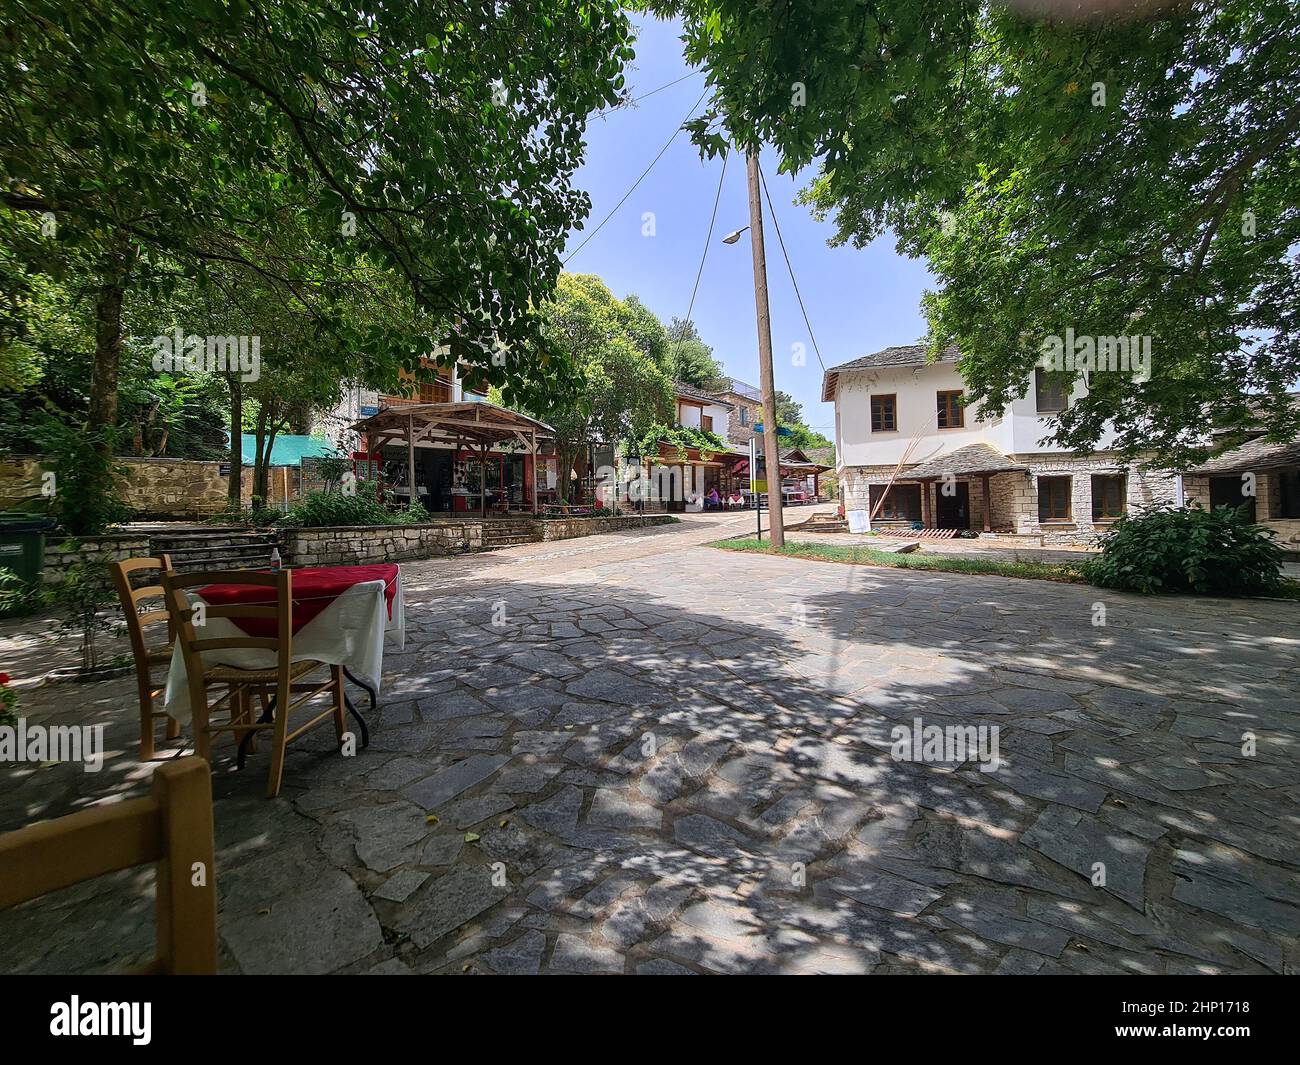 Ioannina, Griechenland - 01. Juli 2021: Schattiger Gastgarten eines Restaurants auf der kleinen Insel im Pamvotis See Stockfoto